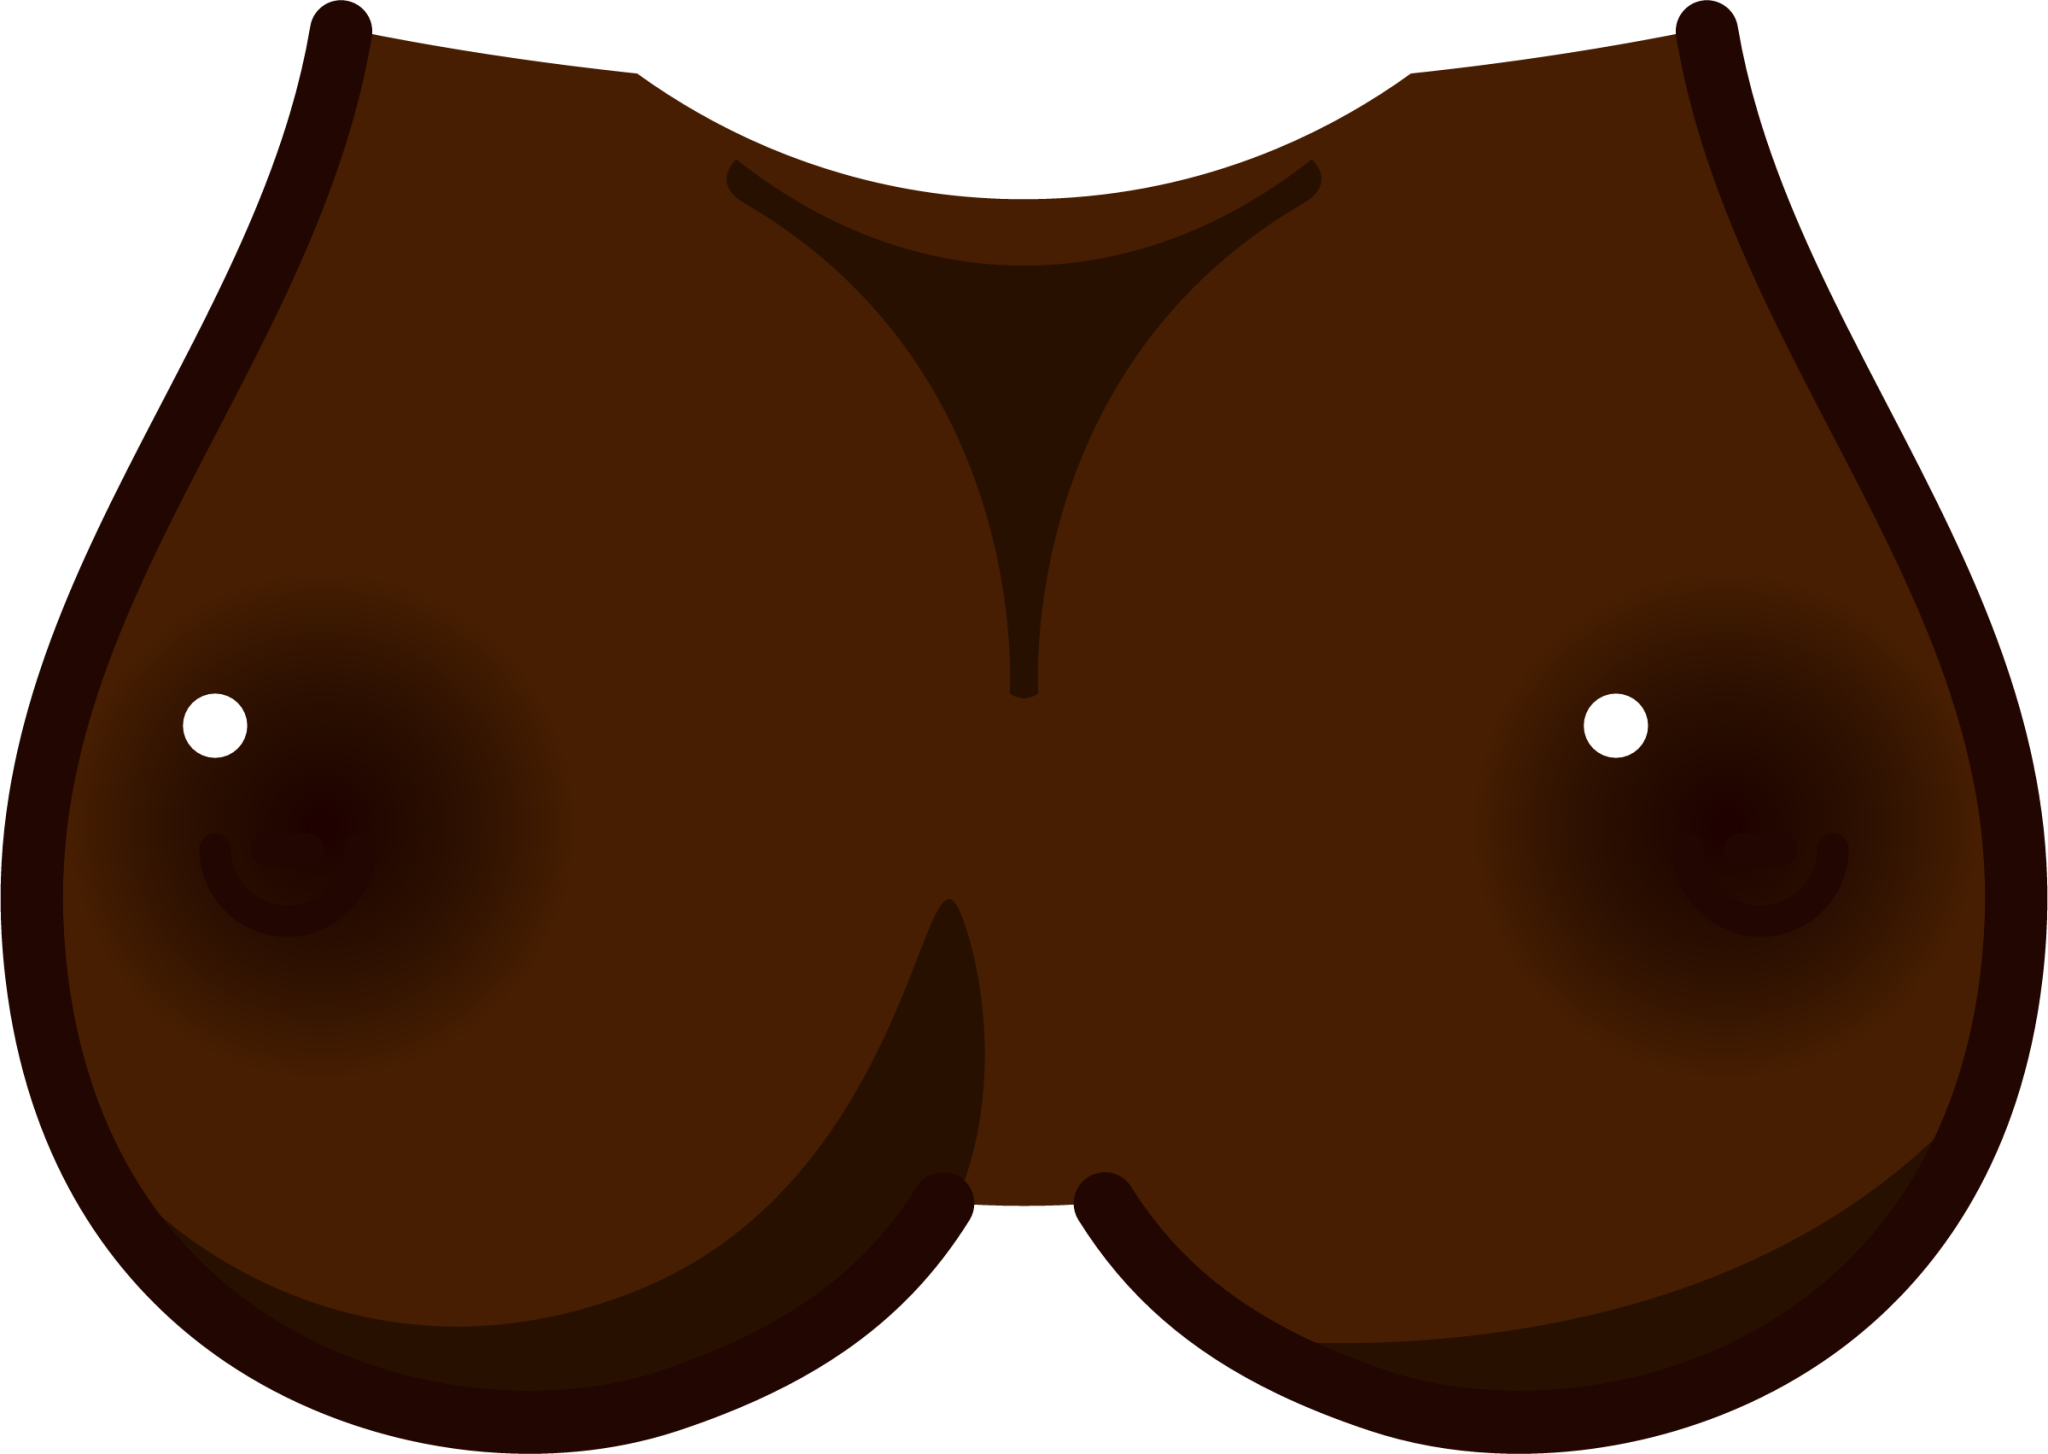 breasts (black) emoji